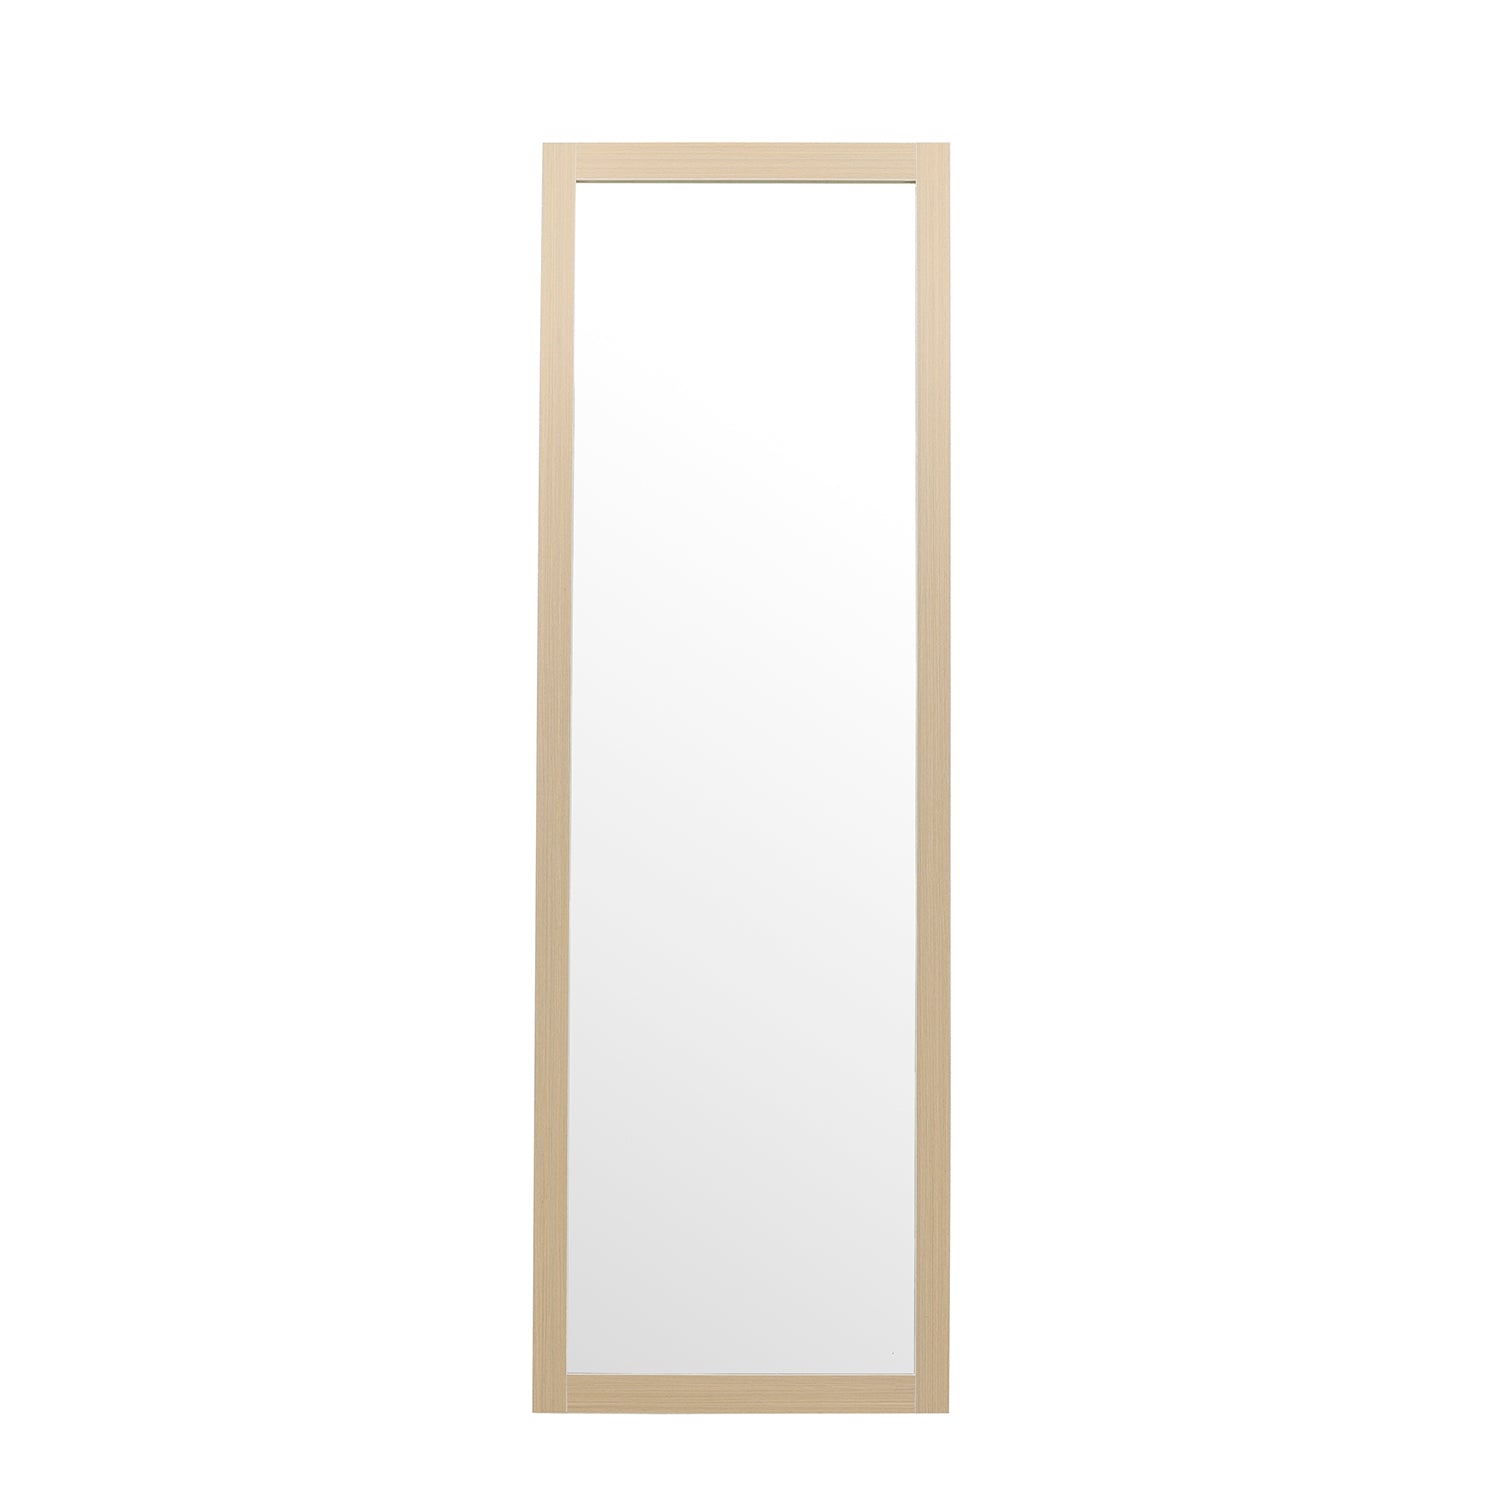 Sebring spejl 55x170 - Møbelkompagniet